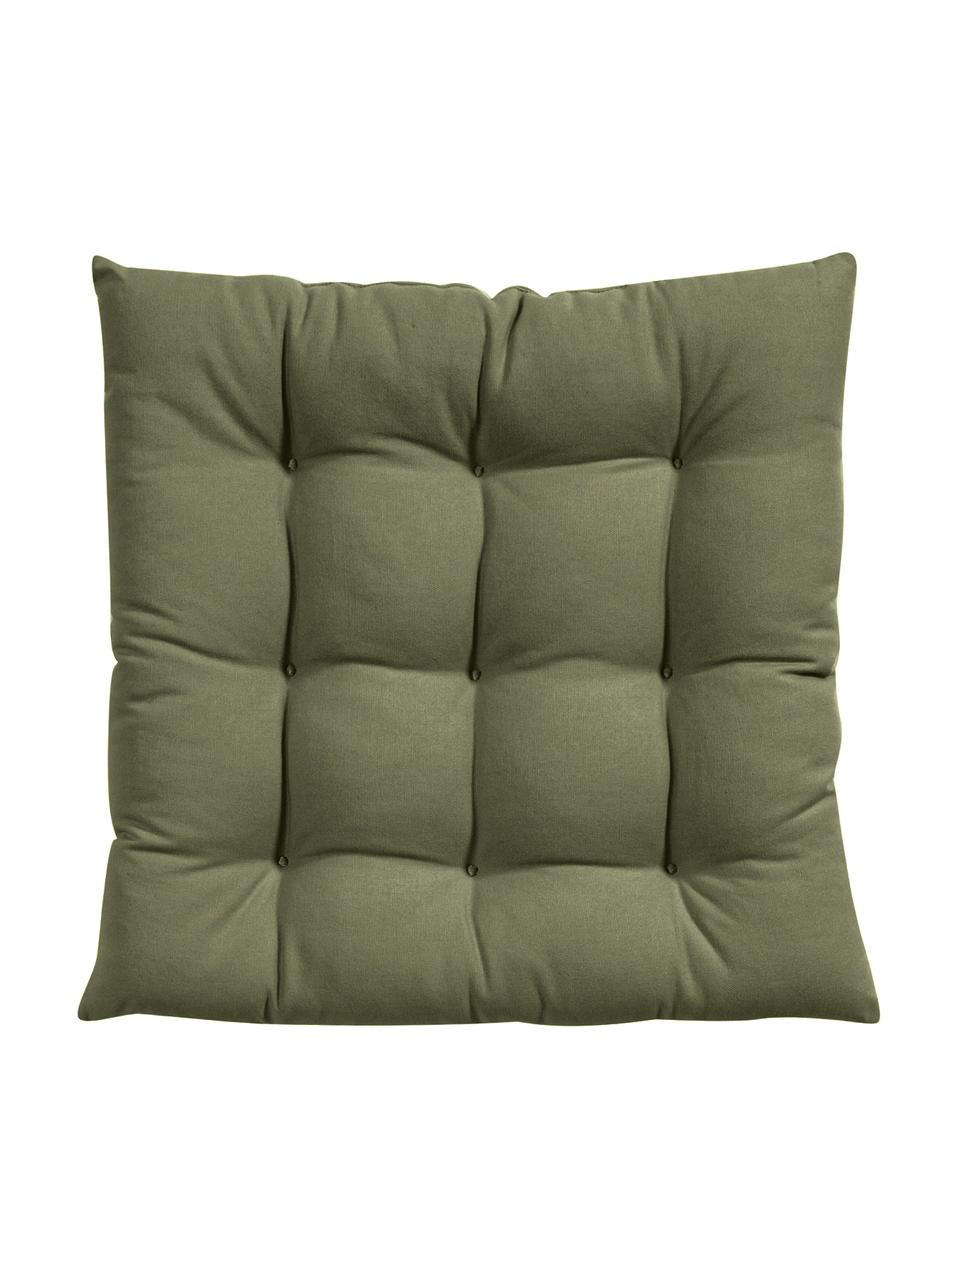 Poduszka siedziska na krzesło z bawełny Ava, Oliwkowy zielony, S 40 x D 40 cm